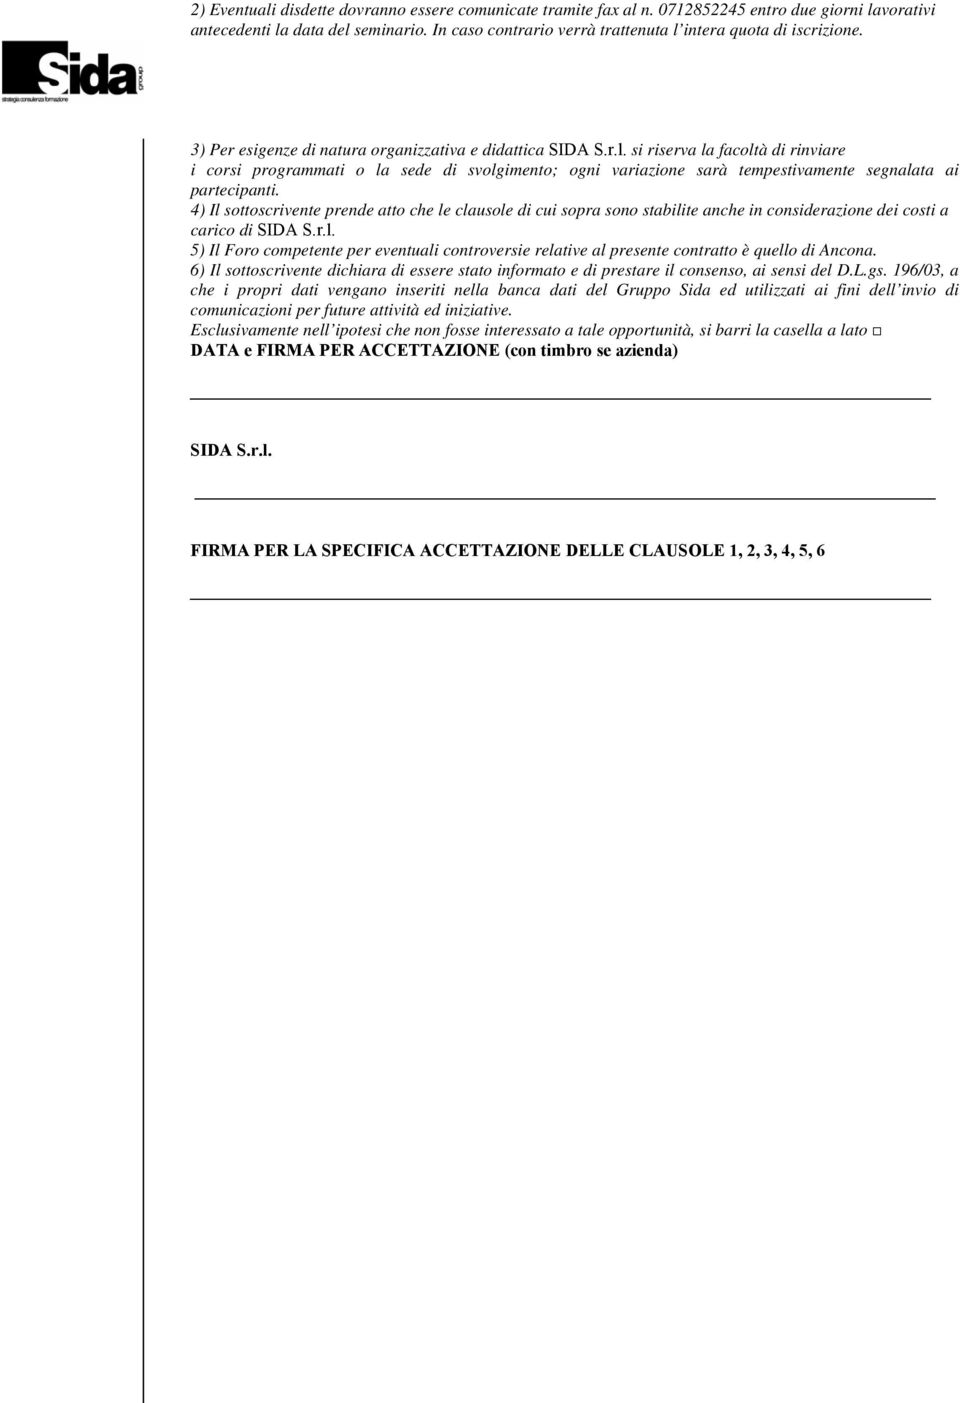 4) Il sottoscrivente prende atto che le clausole di cui sopra sono stabilite anche in considerazione dei costi a carico di SIDA S.r.l. 5) Il Foro competente per eventuali controversie relative al presente contratto è quello di Ancona.